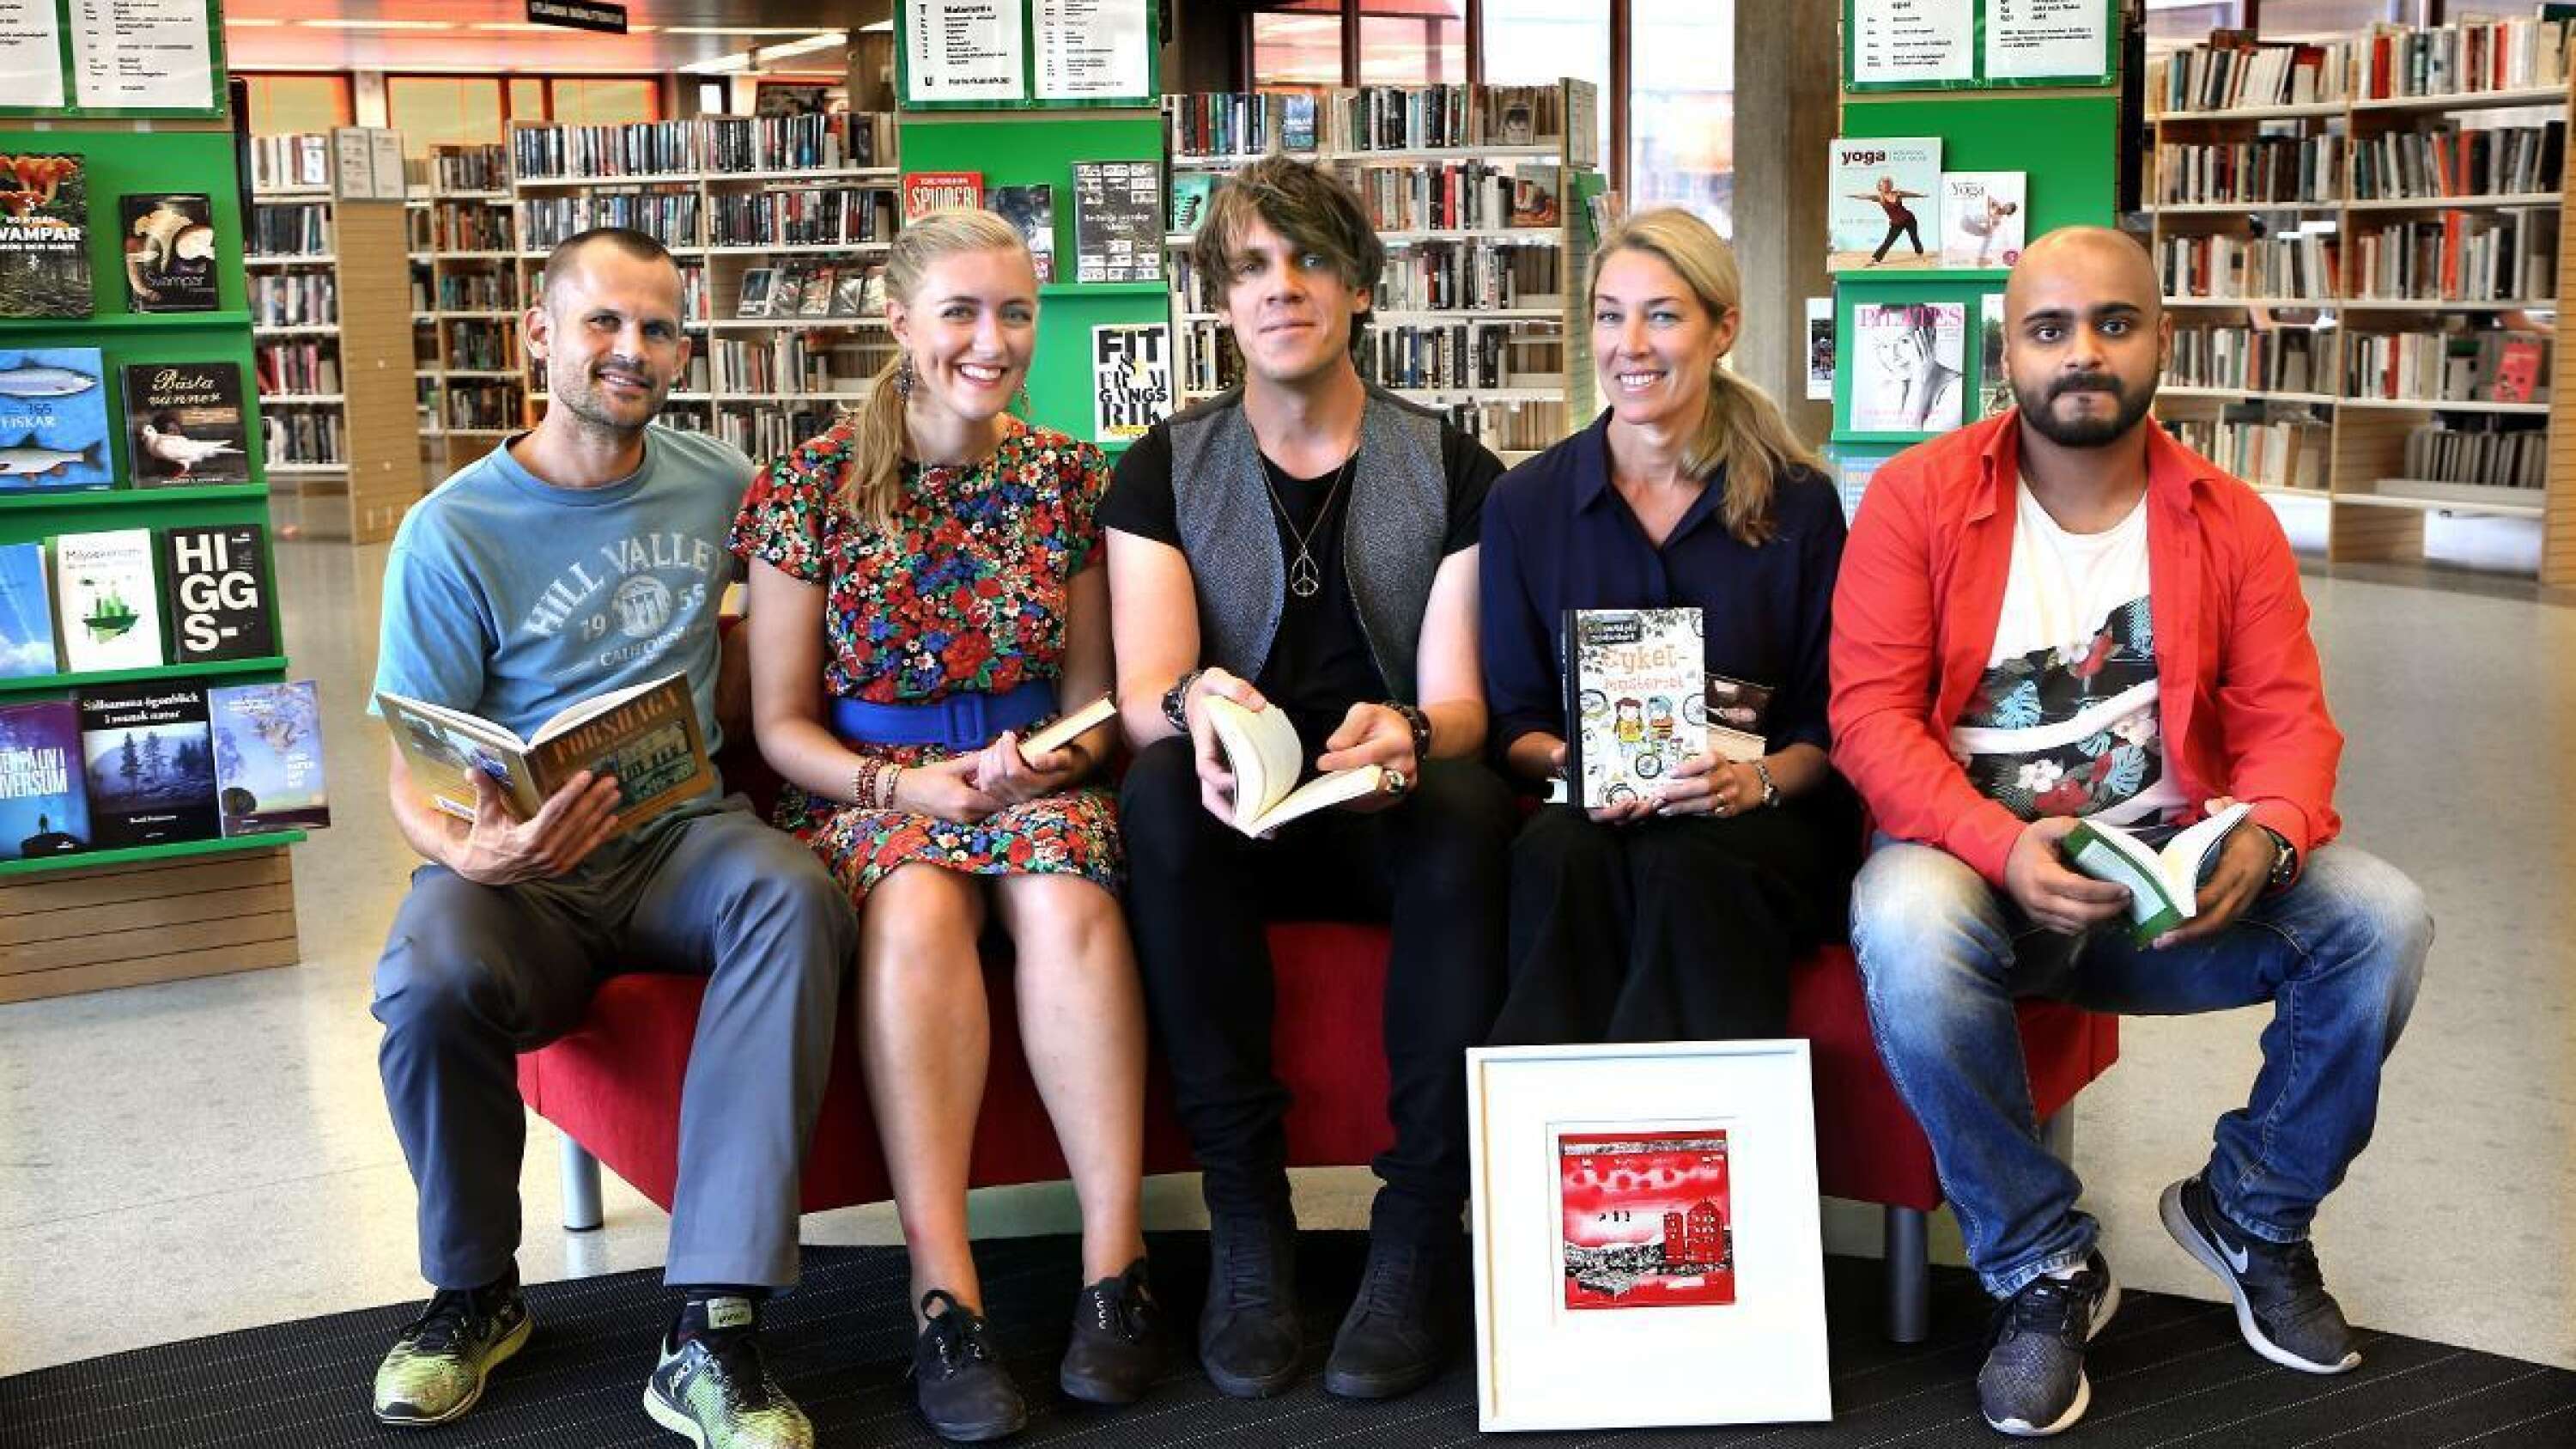 Stefan Holm, Emelie Hebbe, Isamael Atari, Karolina Nolin och Dekan Izat, är de fem läsambassadörer som ska vara med och bidra till ökad läslust under hösten. I Xtra delar de med sig av några inspirerande boktips.